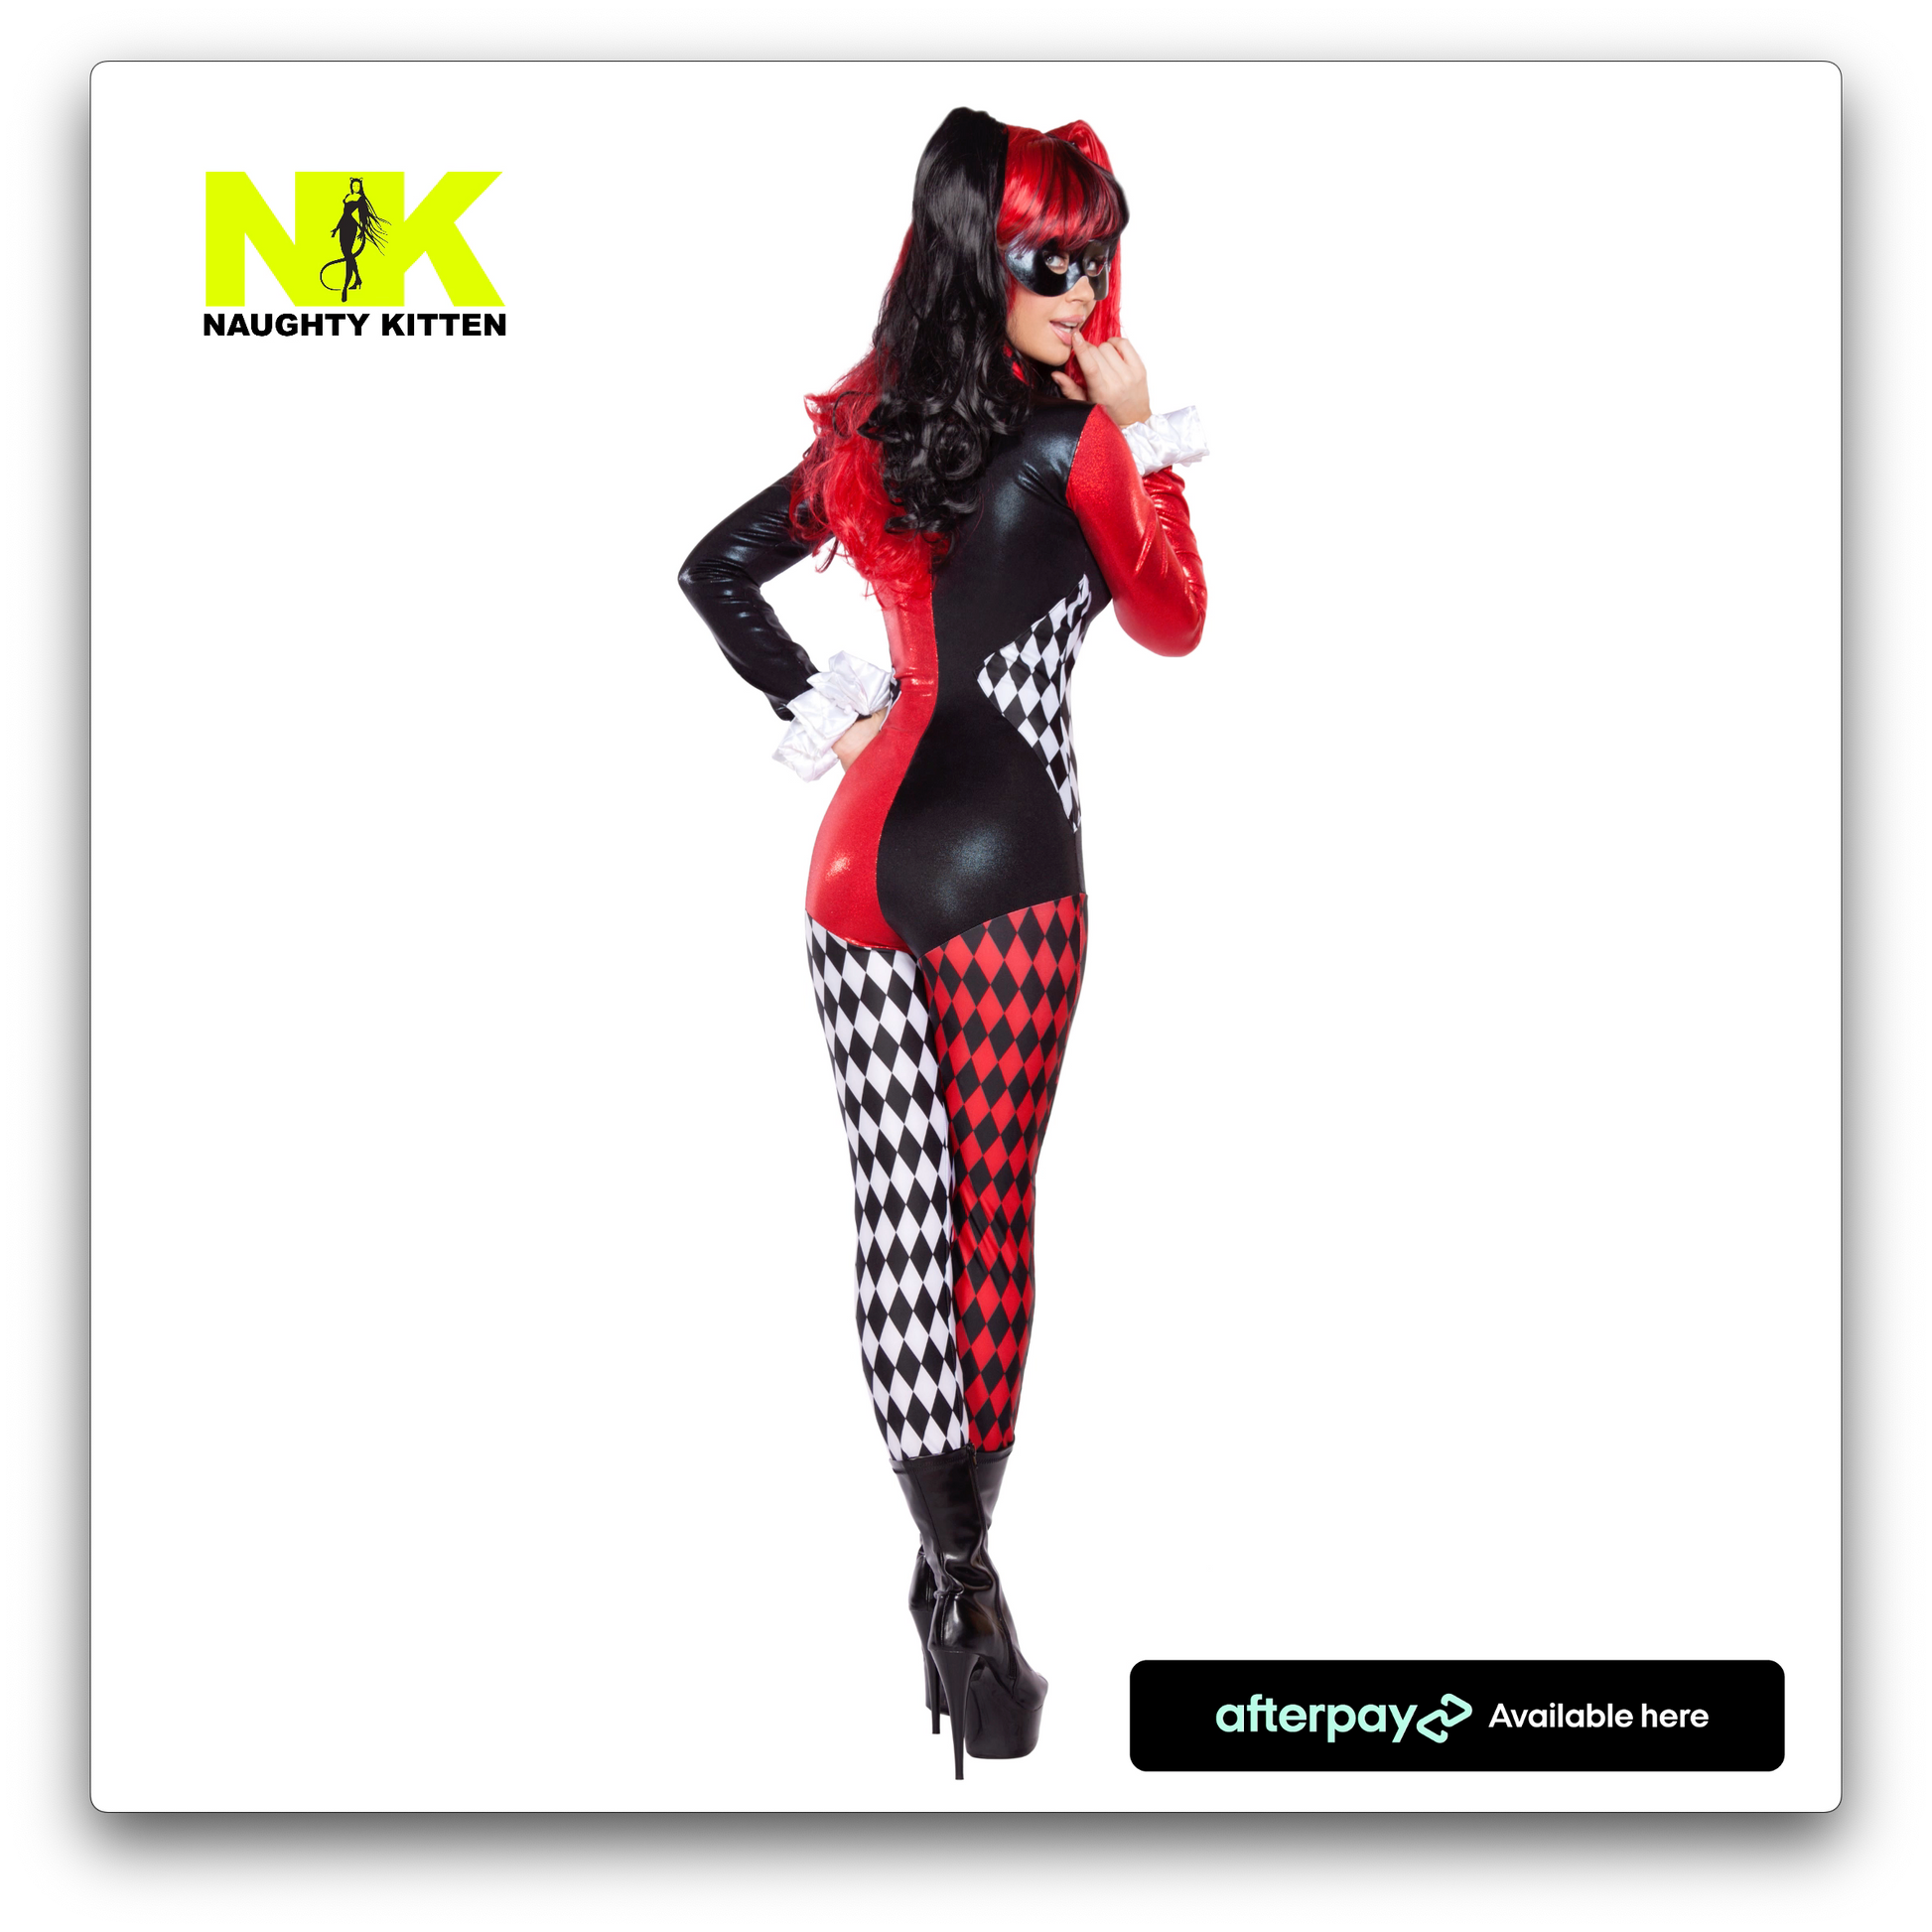 Naughty Kitten Clothing Villainous Vixen Costume Back Rear Size Halloween Costume